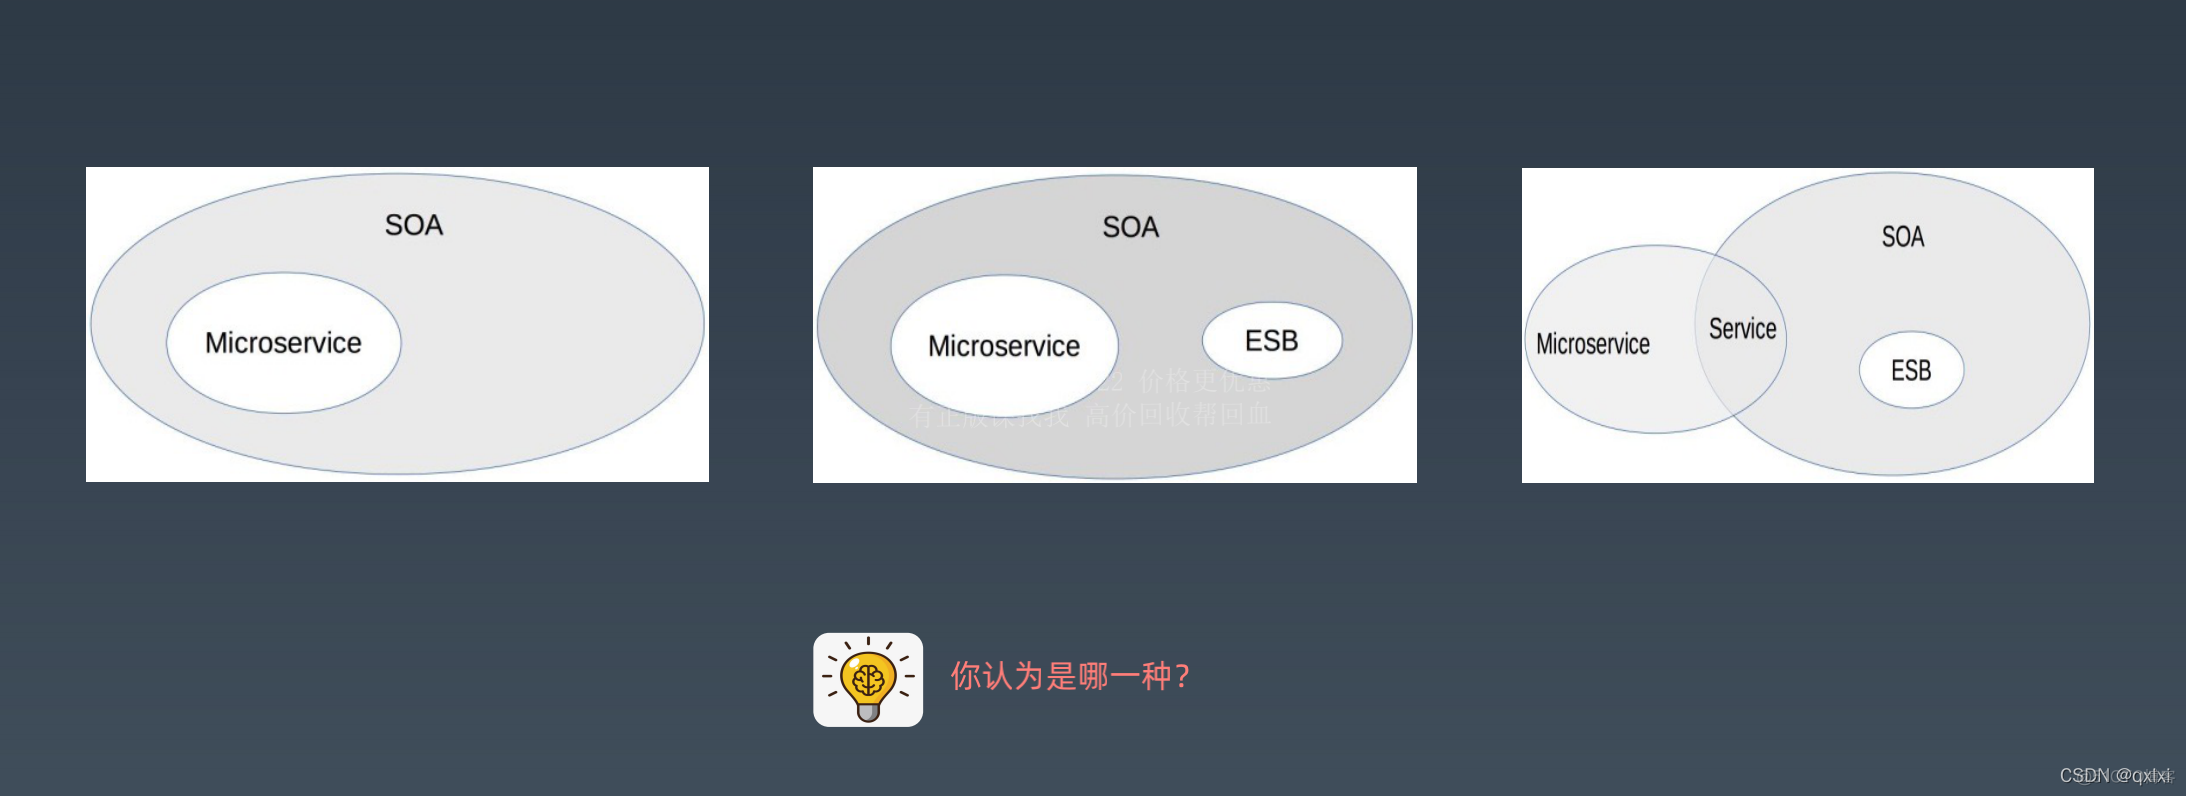 【架构实战营】模块六 1.微服务架构详解_微内核_08